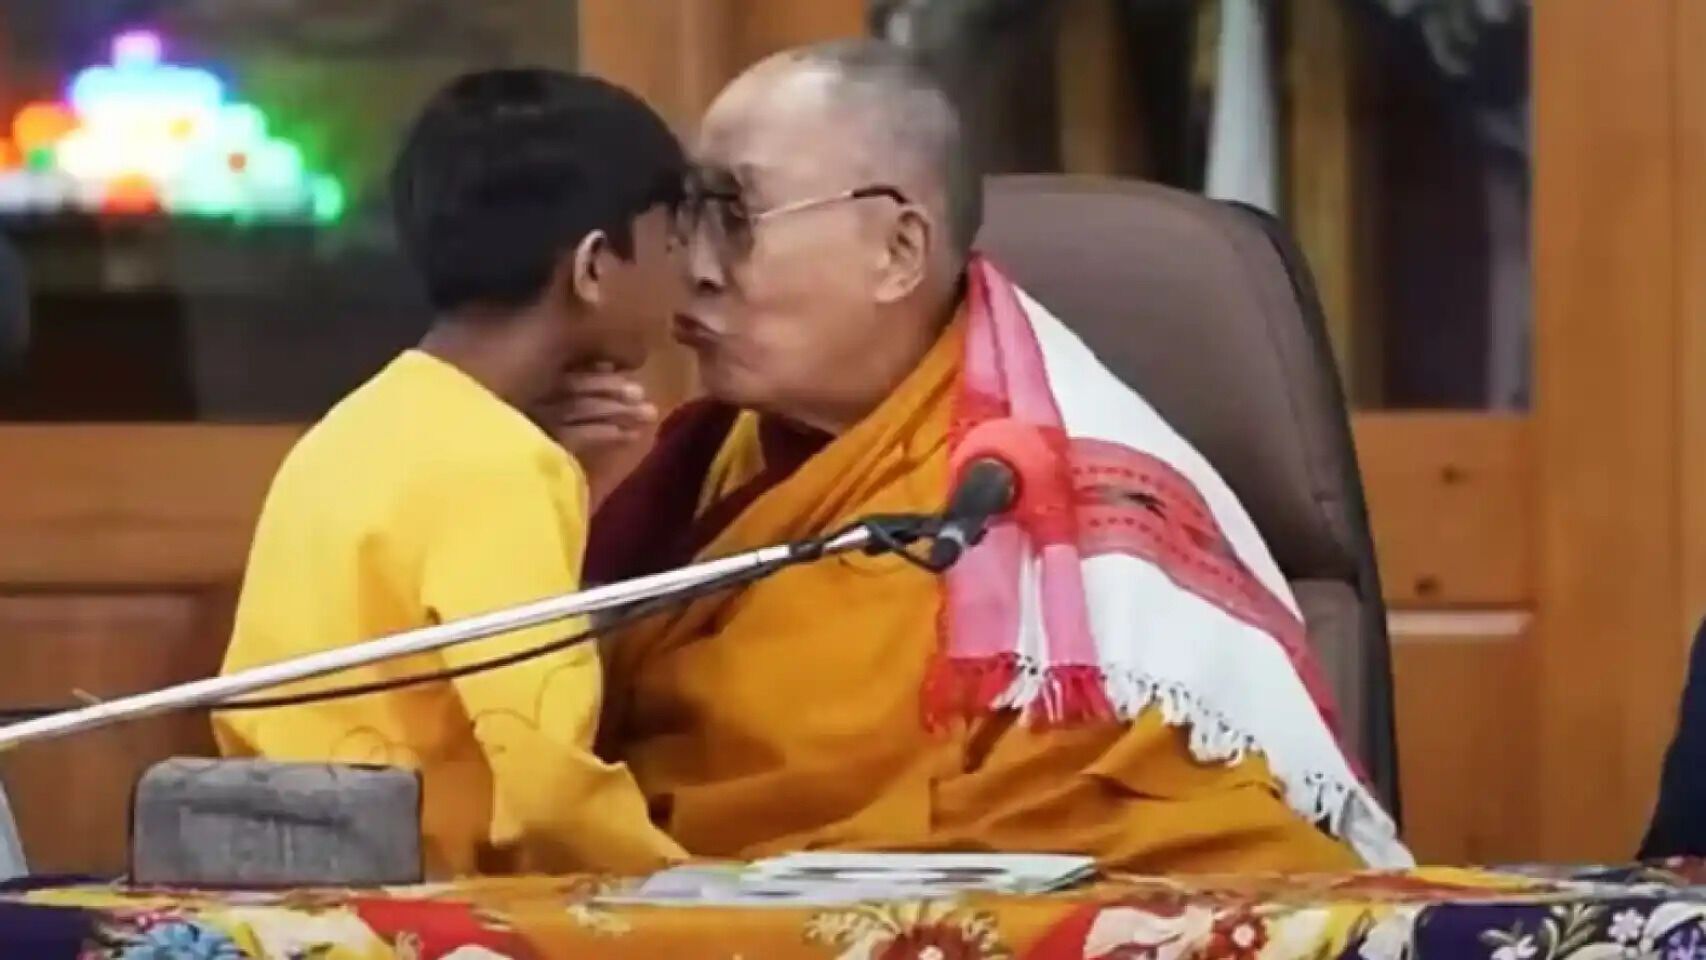 Далай-лама потрапив у гучний скандал через поцілунок із хлопчиком: історія отримала продовження. Відео